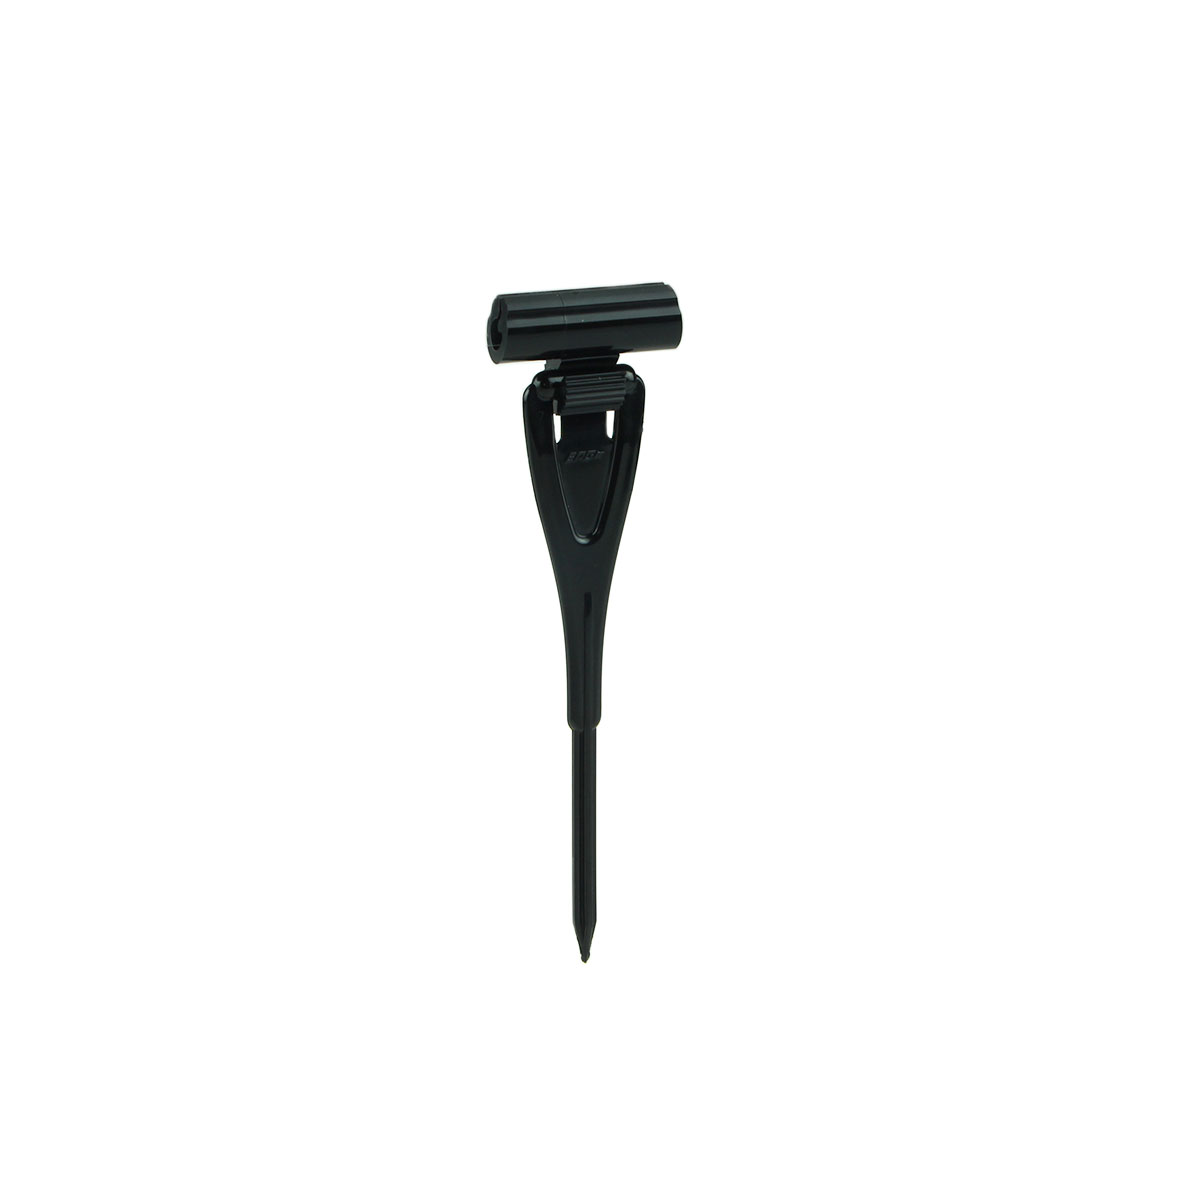 Ценникодержатель ДЕЛИ с иголкой DELI-STICK-SET, цвет черный (10 шт. в упаковке)